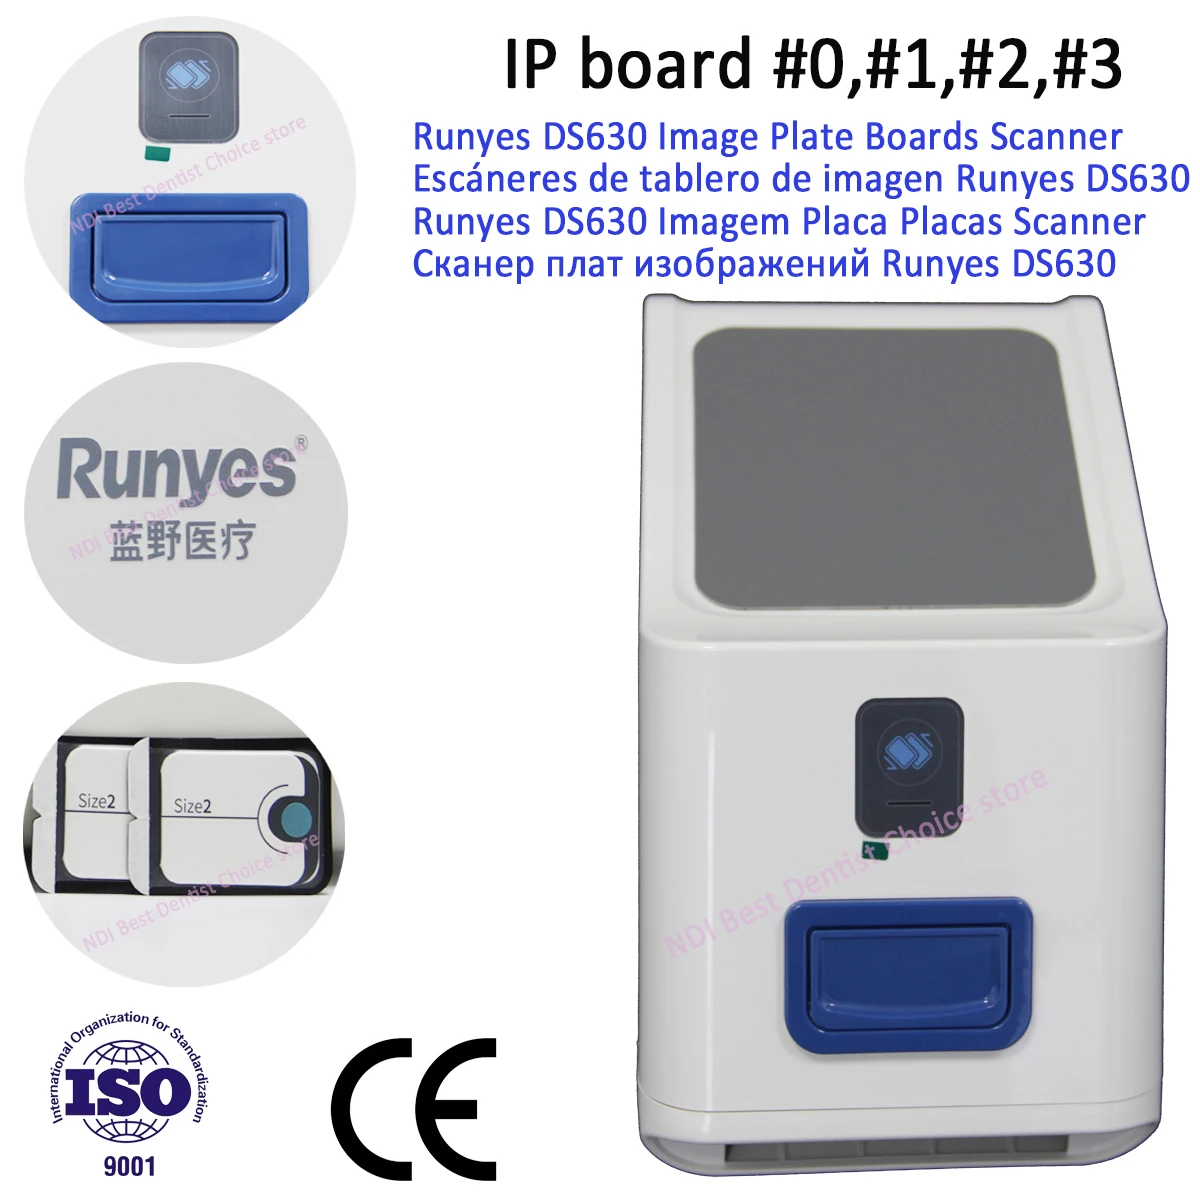 Стоматологический цифровой томограф Runyes DS630 с португальско-испанским языком установки для сканирования в бразильской клинике . ' - ' . 1